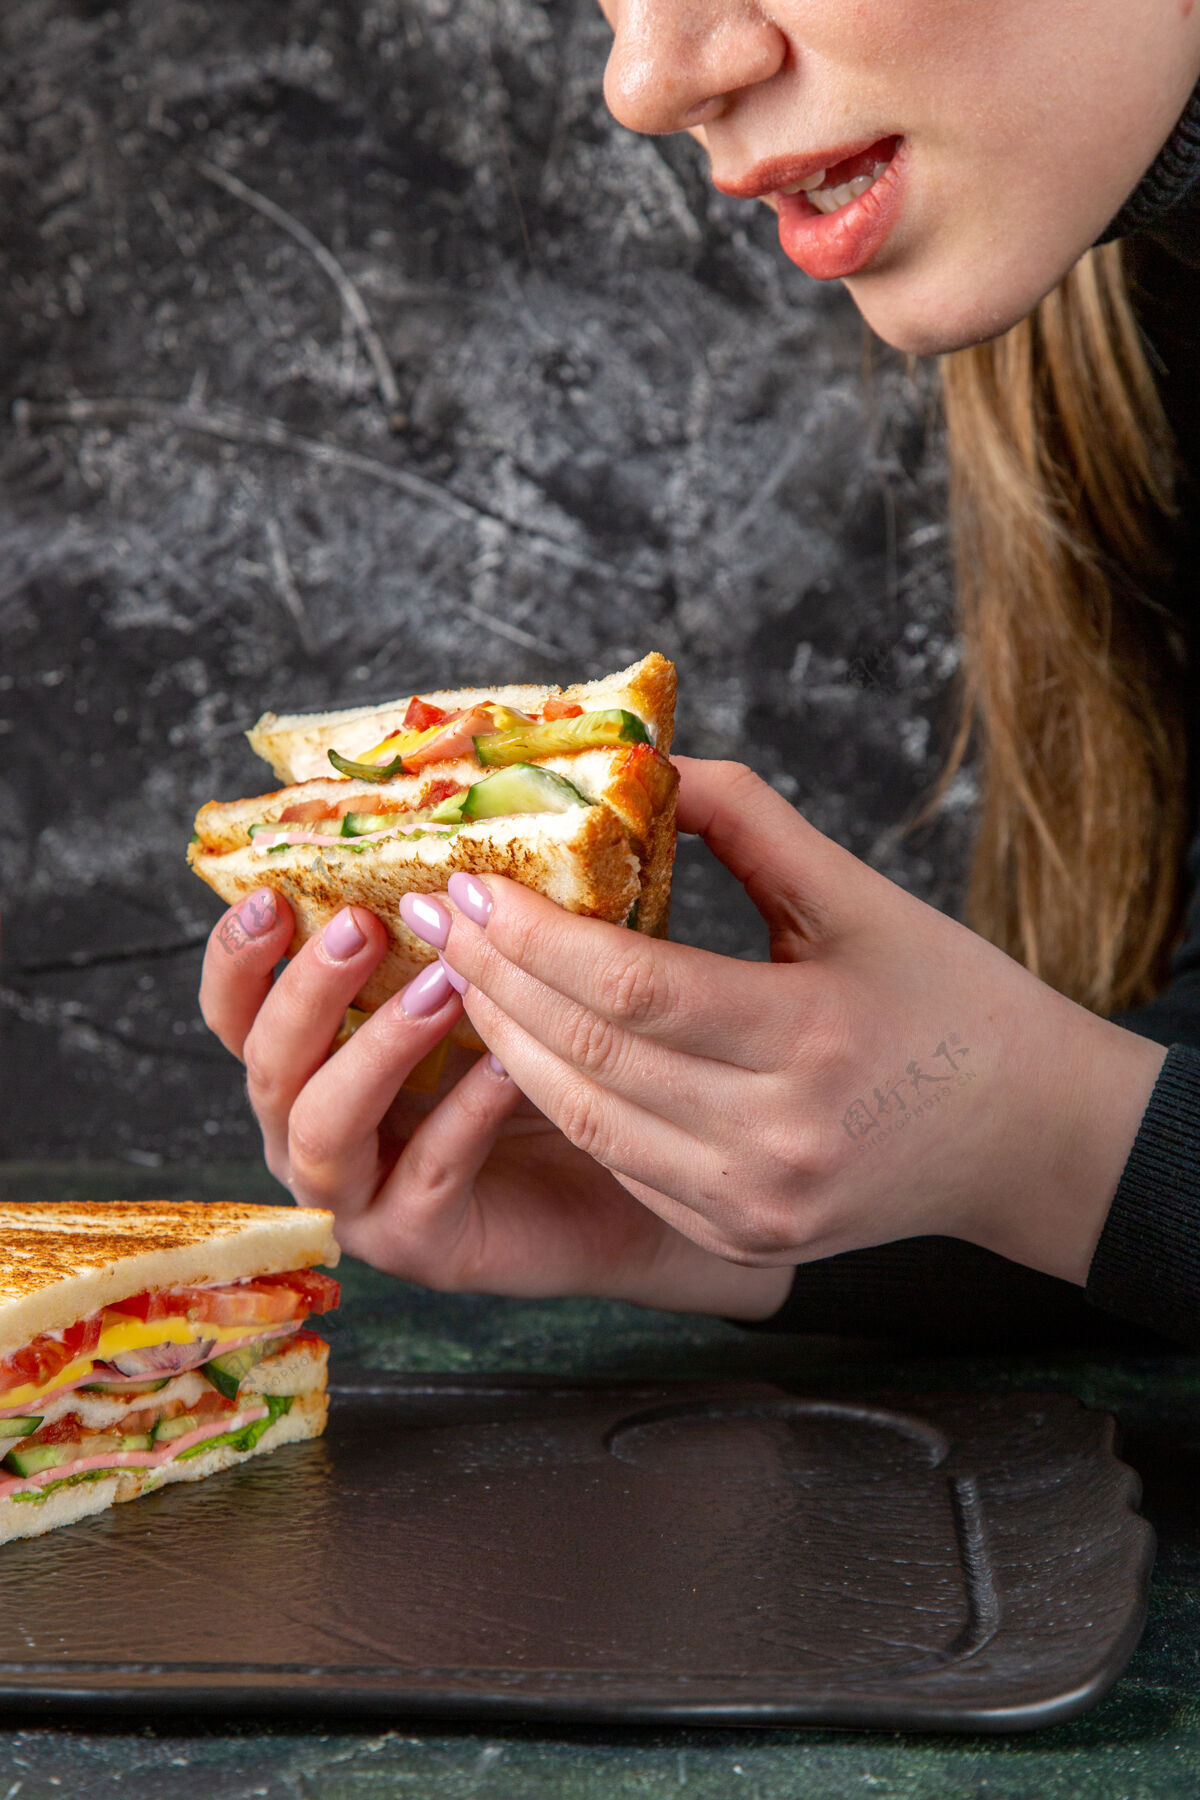 饮食正面图美味的火腿三明治正在黑暗的表面被女性吃掉前面黑暗三明治